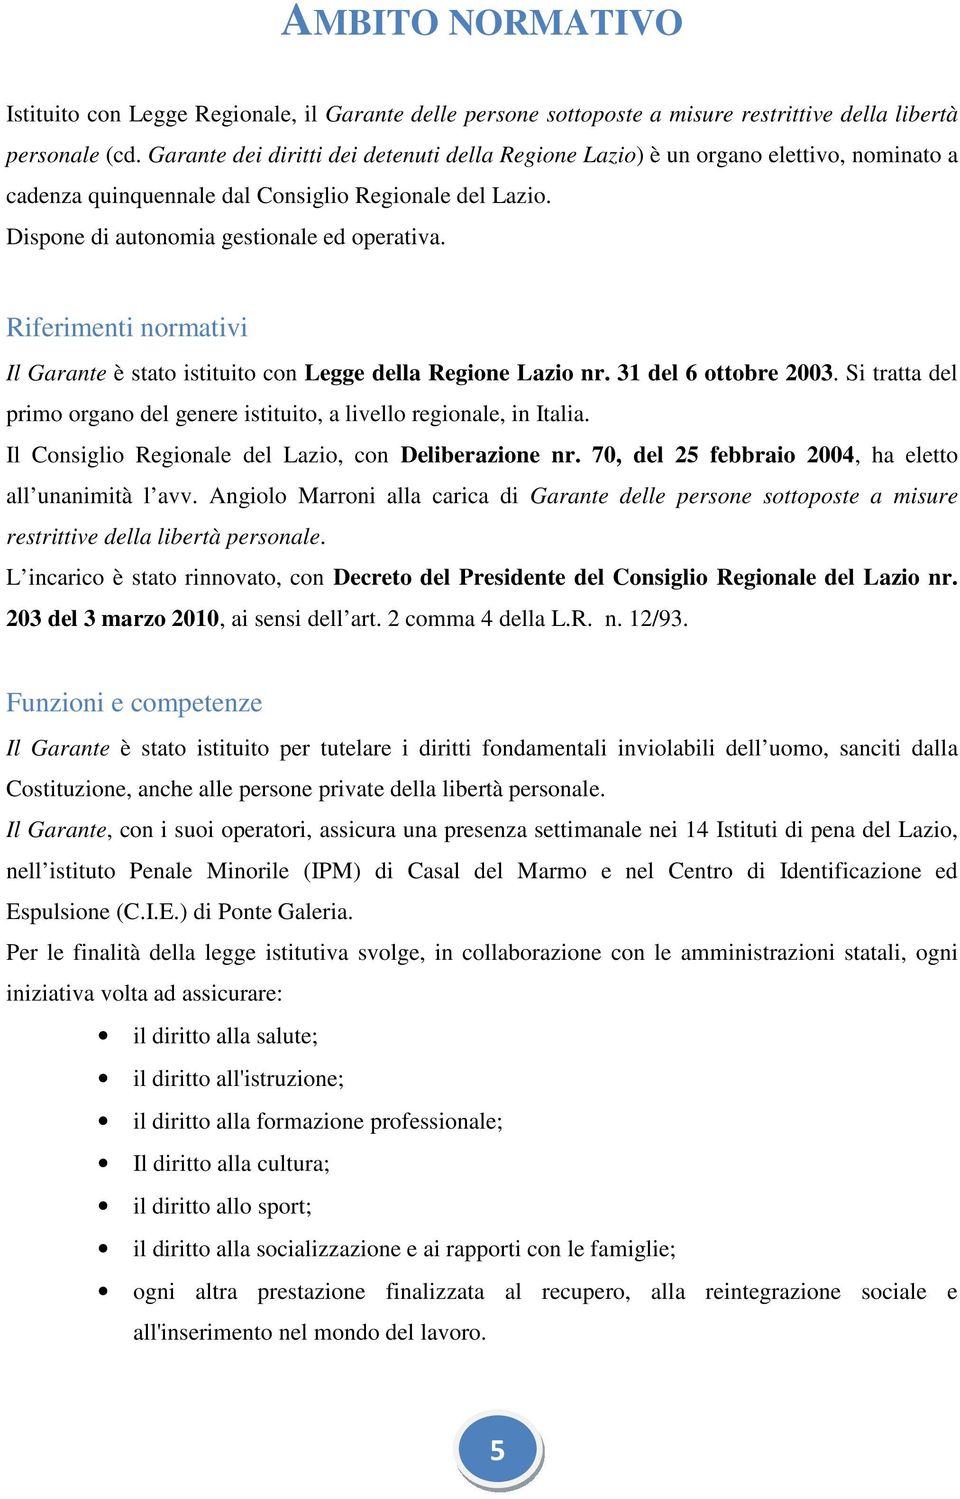 Riferimenti normativi Il Garante è stato istituito con Legge della Regione Lazio nr. 31 del 6 ottobre 2003. Si tratta del primo organo del genere istituito, a livello regionale, in Italia.